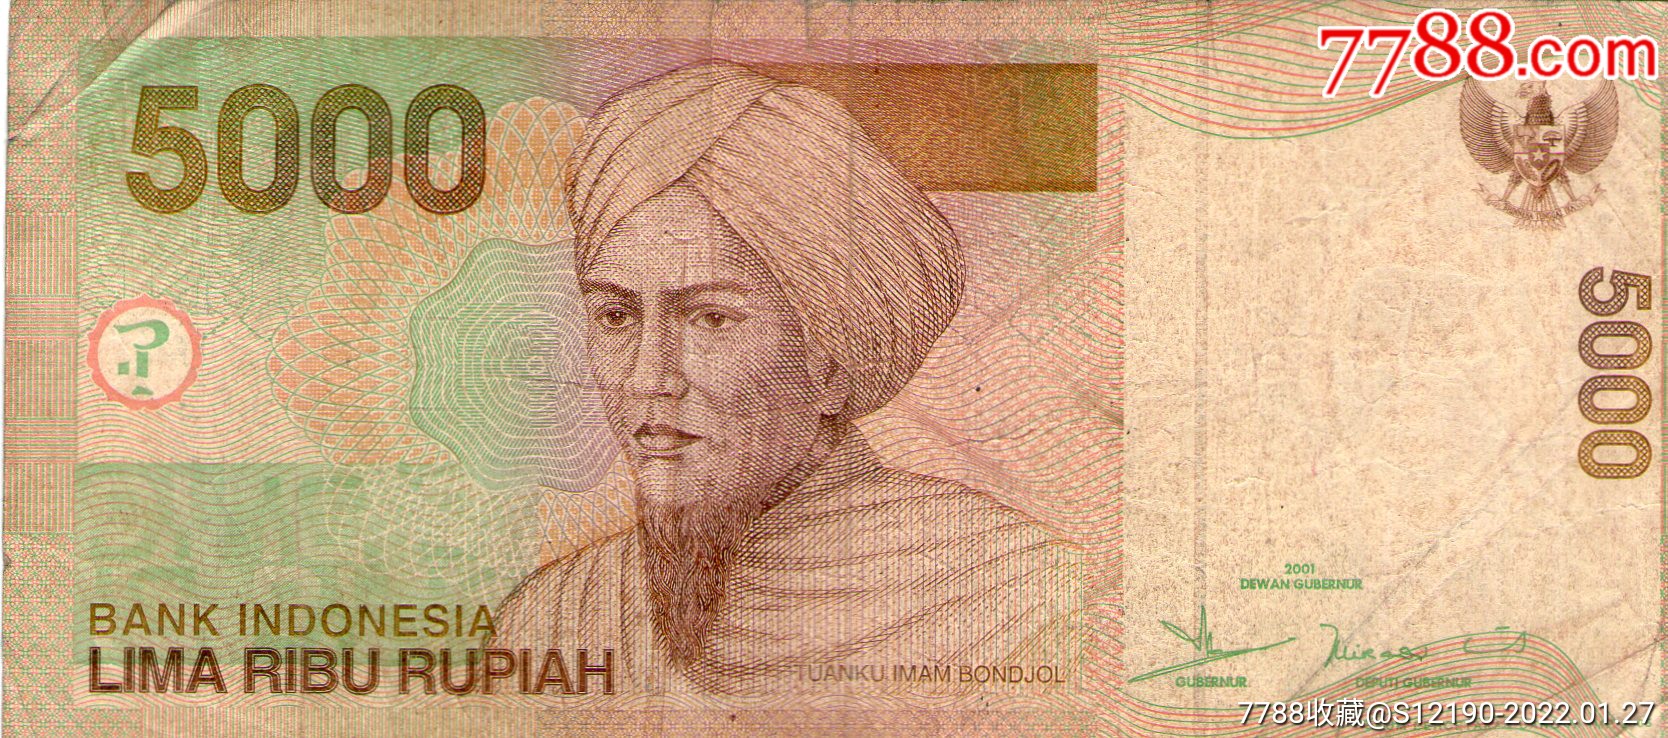 印度尼西亚5000卢比2001版